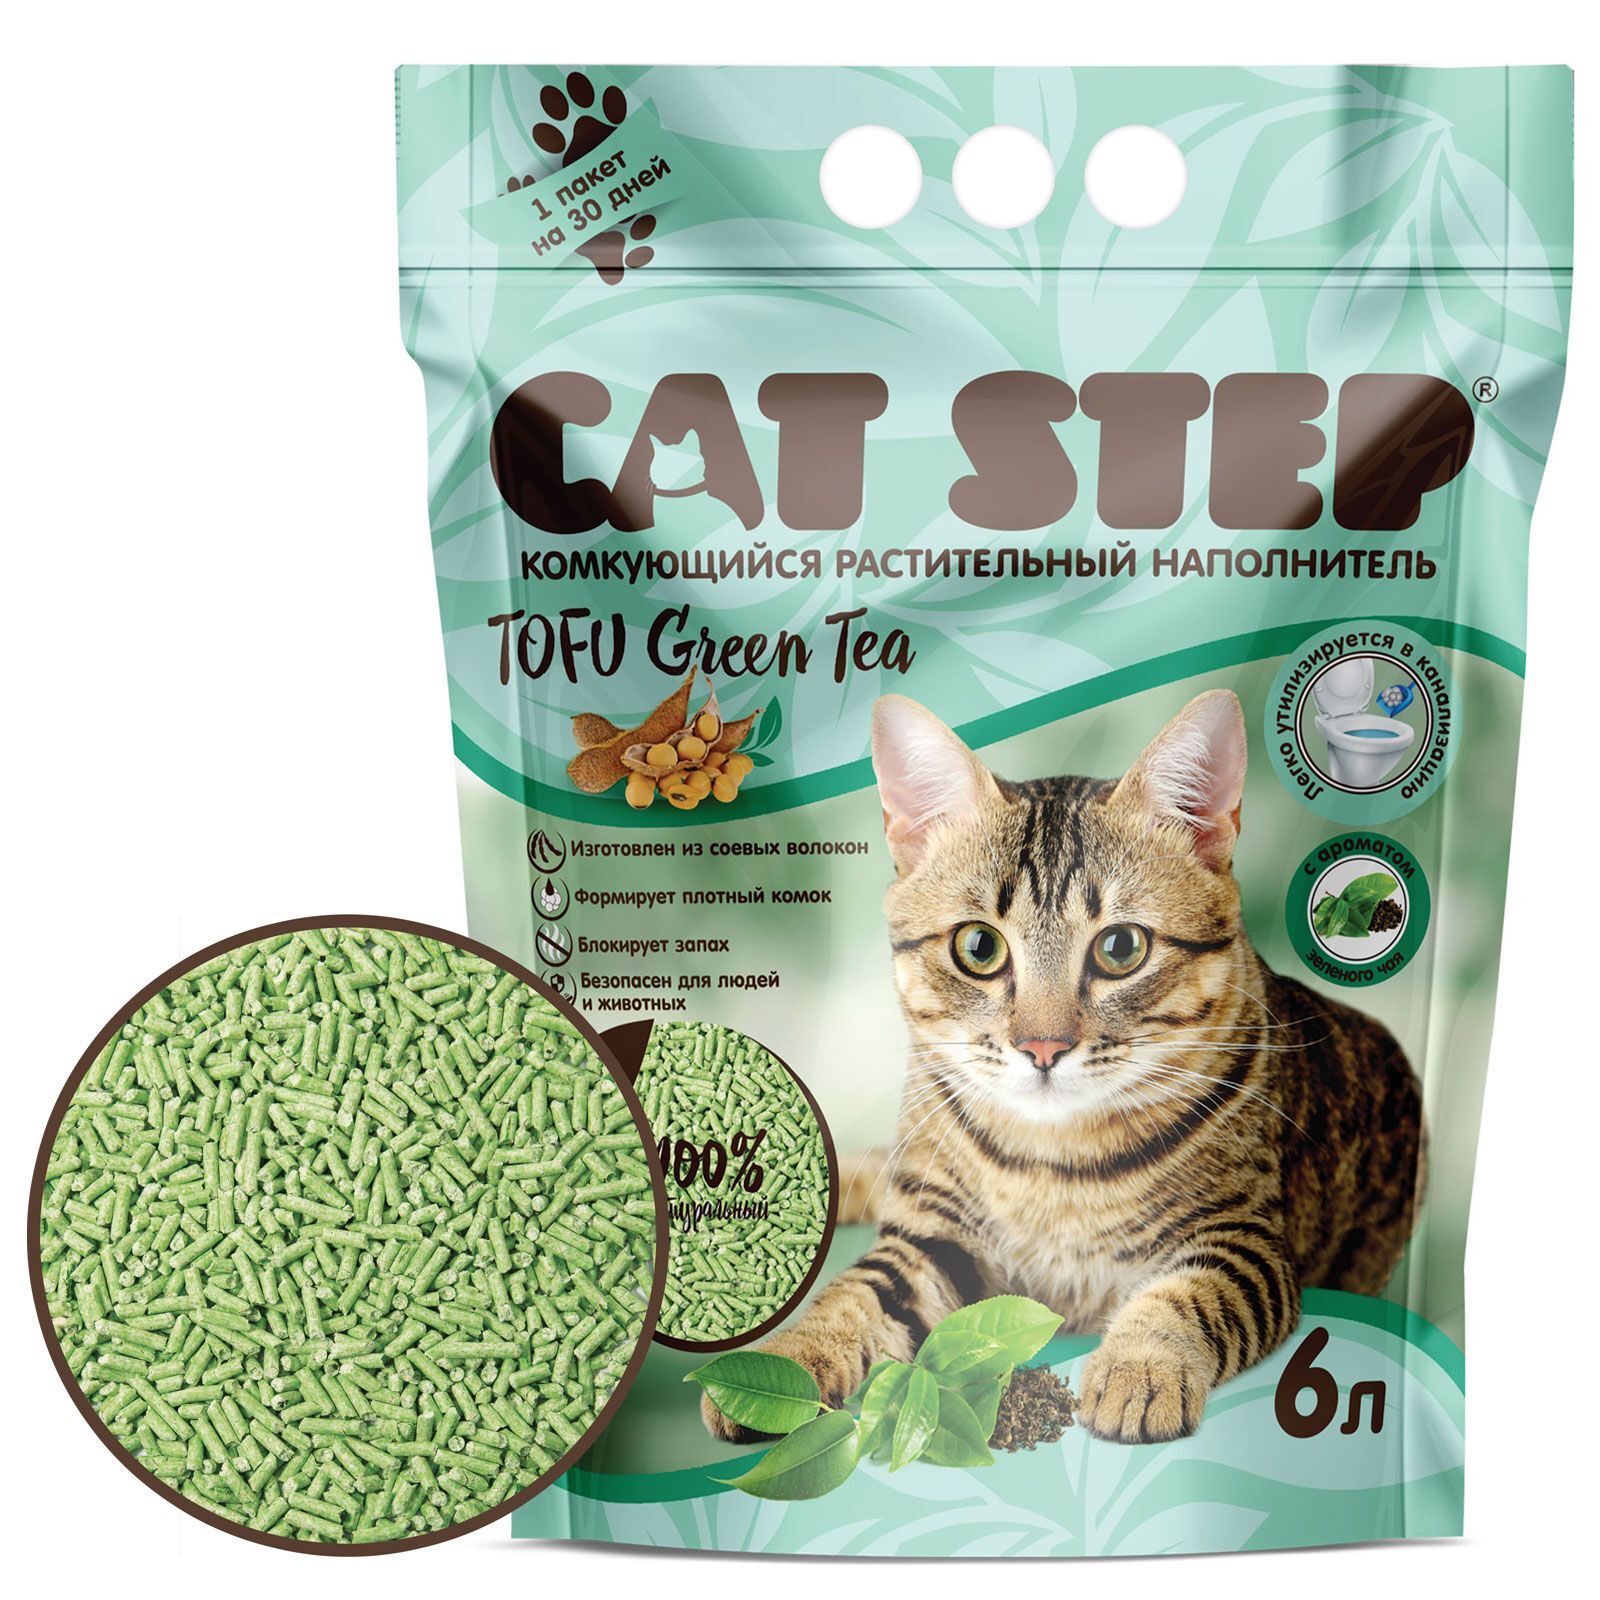 Наполнитель CAT STEP Tofu Green Tea,комкующий растительный,12 л,5,62(Цена за кг)